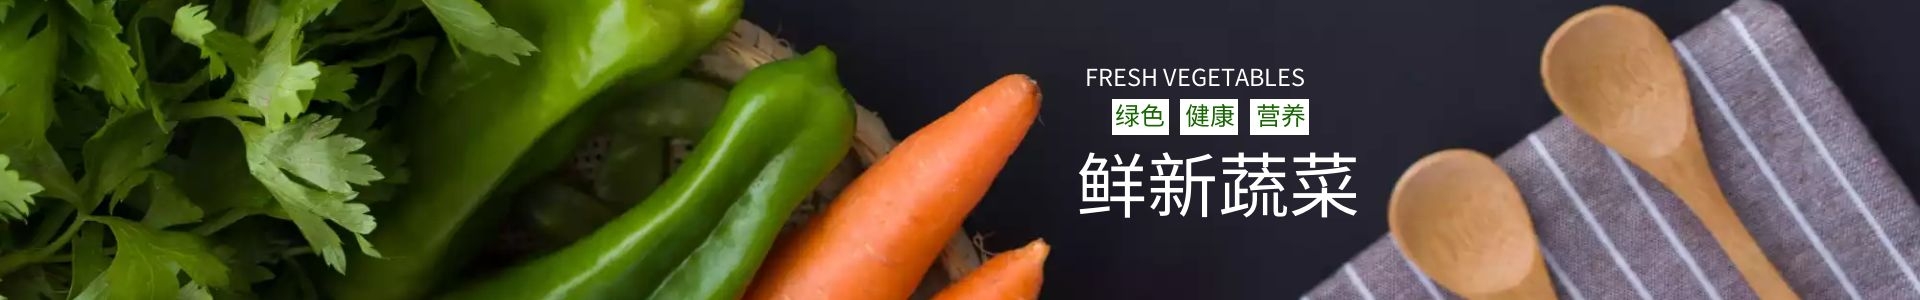 蔬菜配送-广州碧溪有机农业有限公司